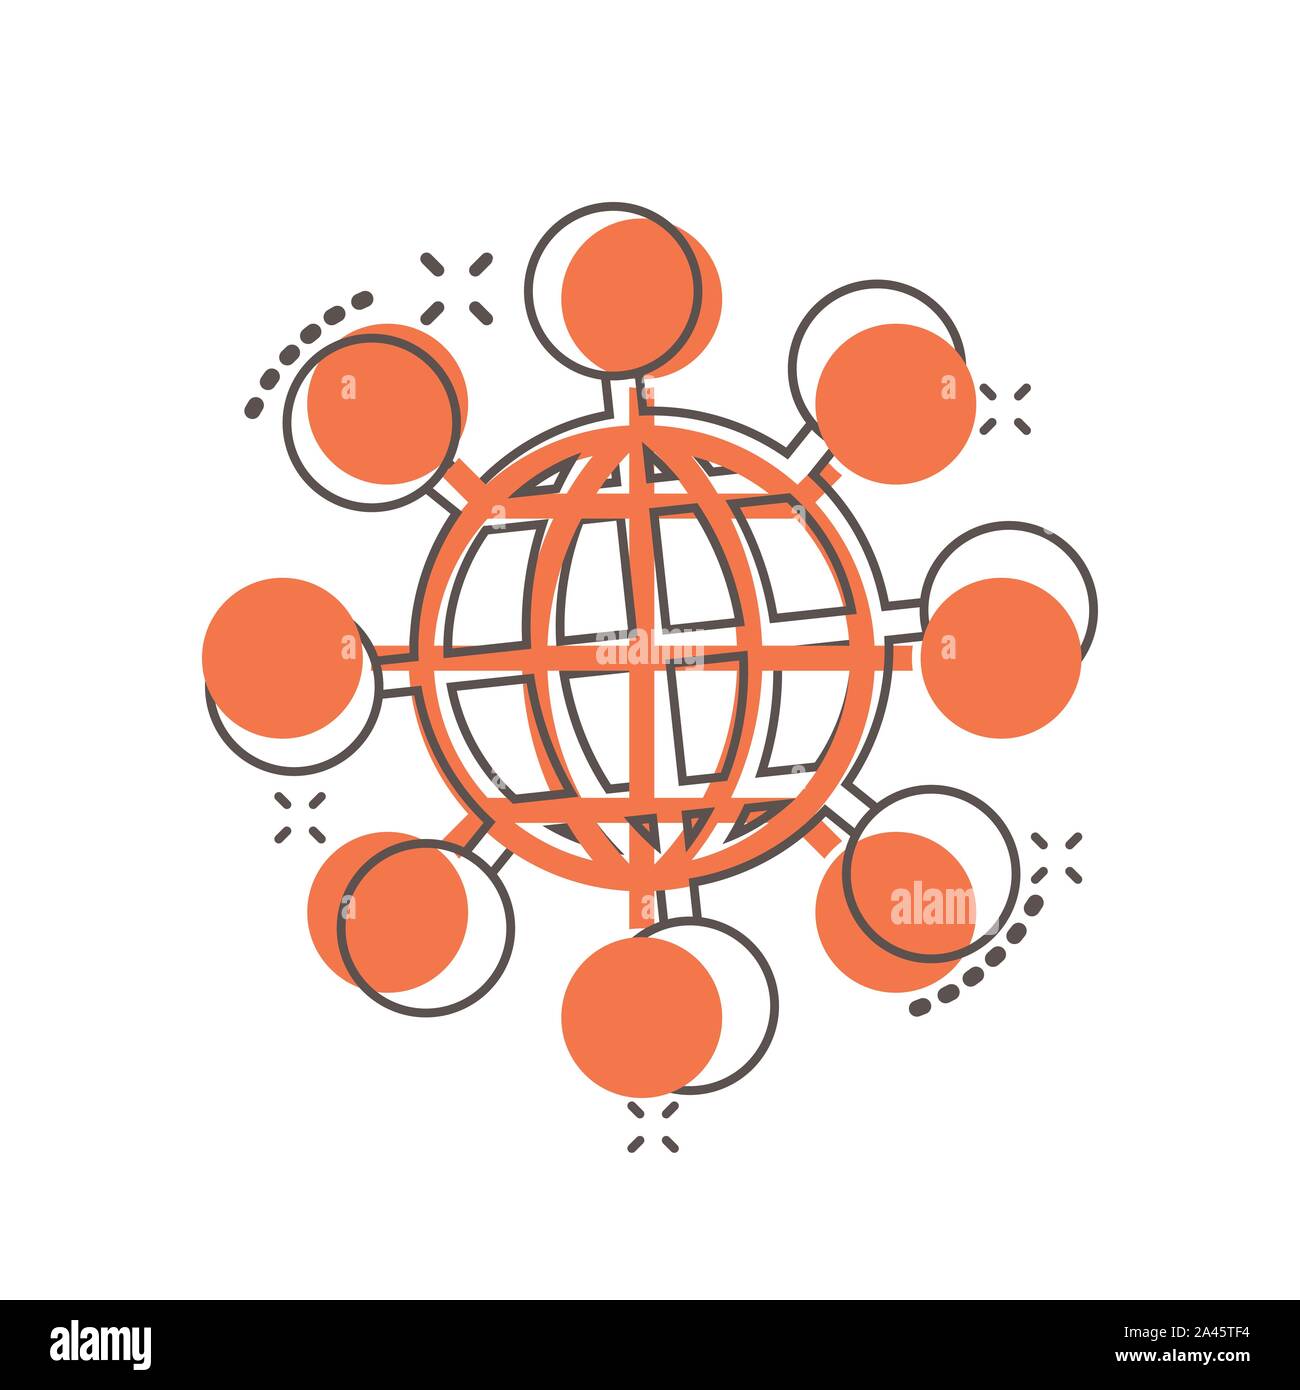 Vektor cartoon sharing Globussymbol im Comic-stil. Digitale Konzept Abbildung Piktogramm anschließen. Teamarbeit Kommunikation business splash Wirkung anhand von quantitativen Simulatio Stock Vektor